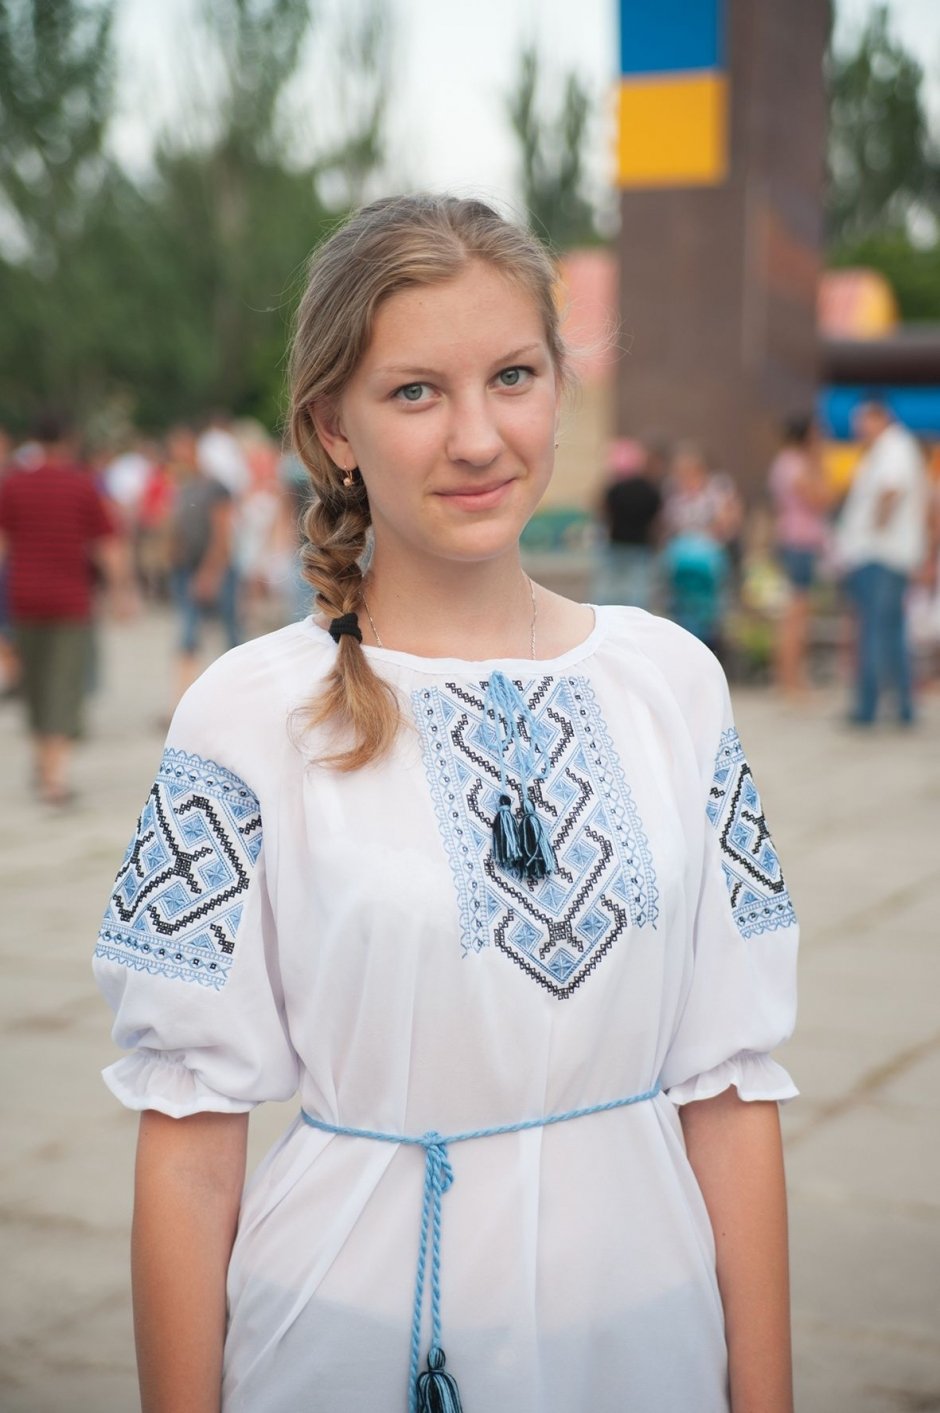 Марина, 14 лет. Этот фестиваль связан с природой и историей Украины, а я уважаю и ту, и другую. Подобную одежду ношу по случаю. Например, в школу, где мы, кстати, каждое утро начинаем с гимна Украины.